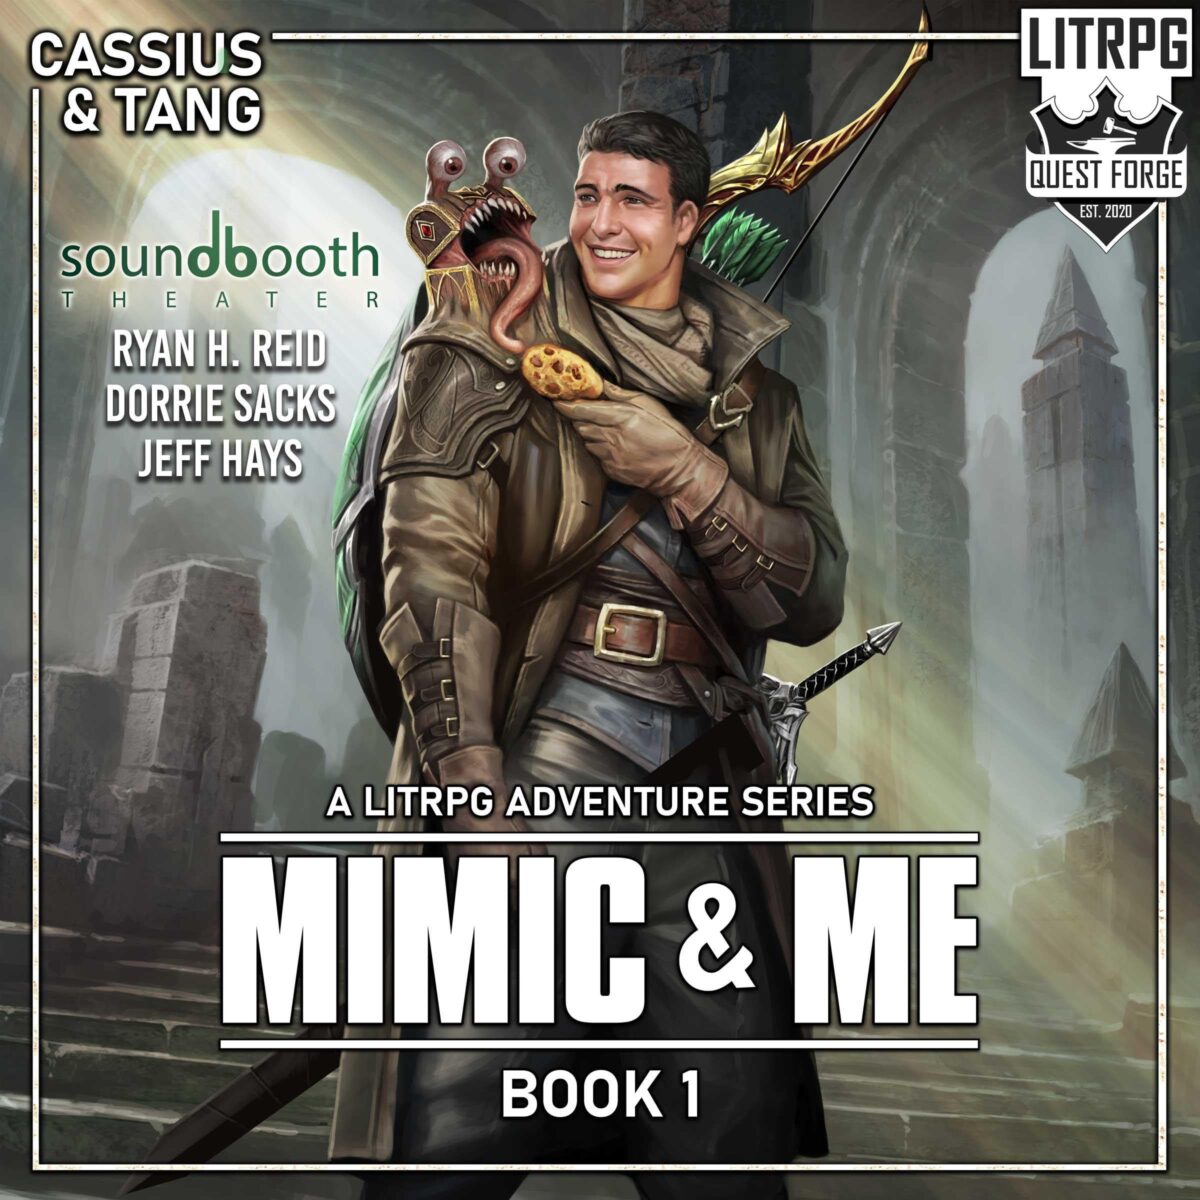 Mimic & Me